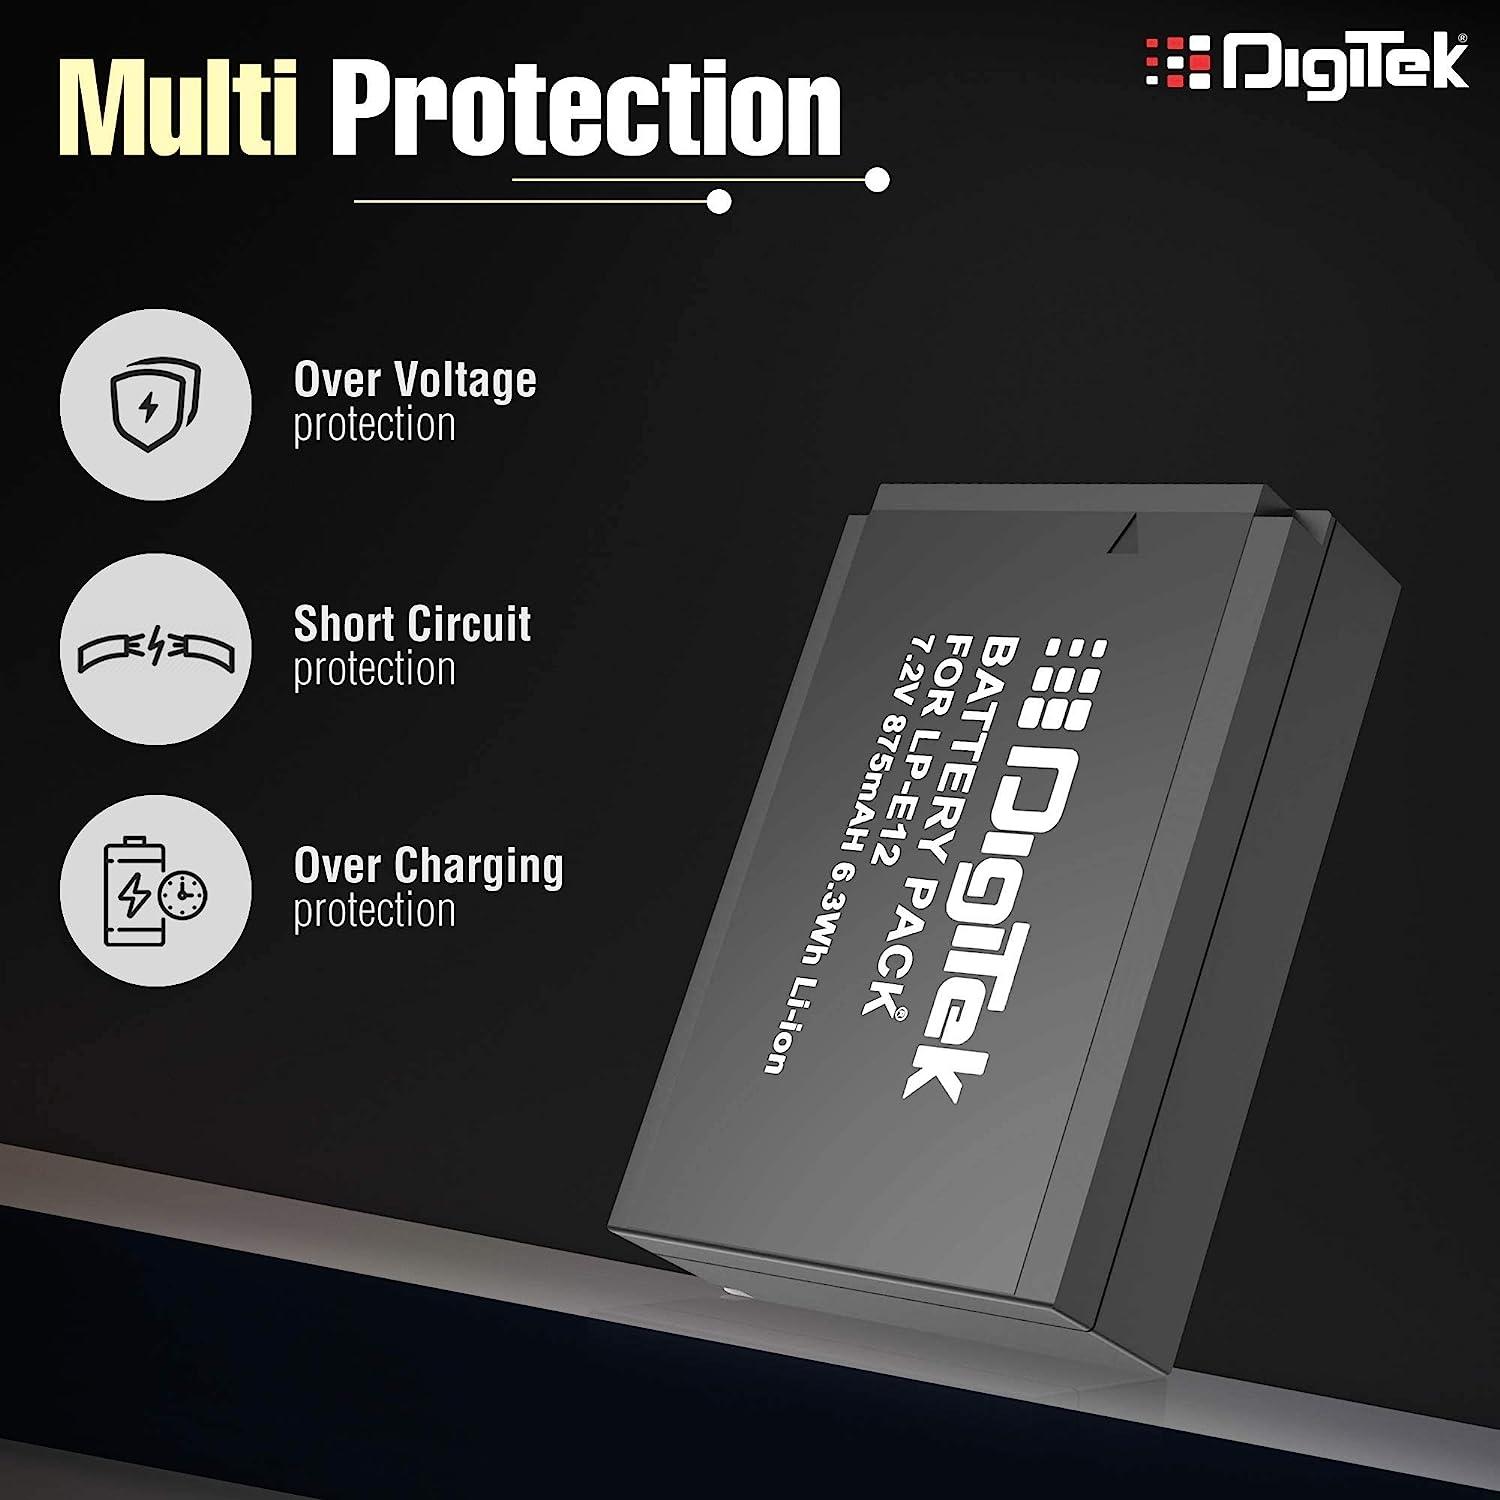 Digitek (LP E12) Lithium-ion Rechargeable Battery Pack for DSLR Camera, Compatibility - EOS M Series, 100D, Kiss M, Kiss X7, Rebel SL1, Power Shot SX70 HS - Digitek